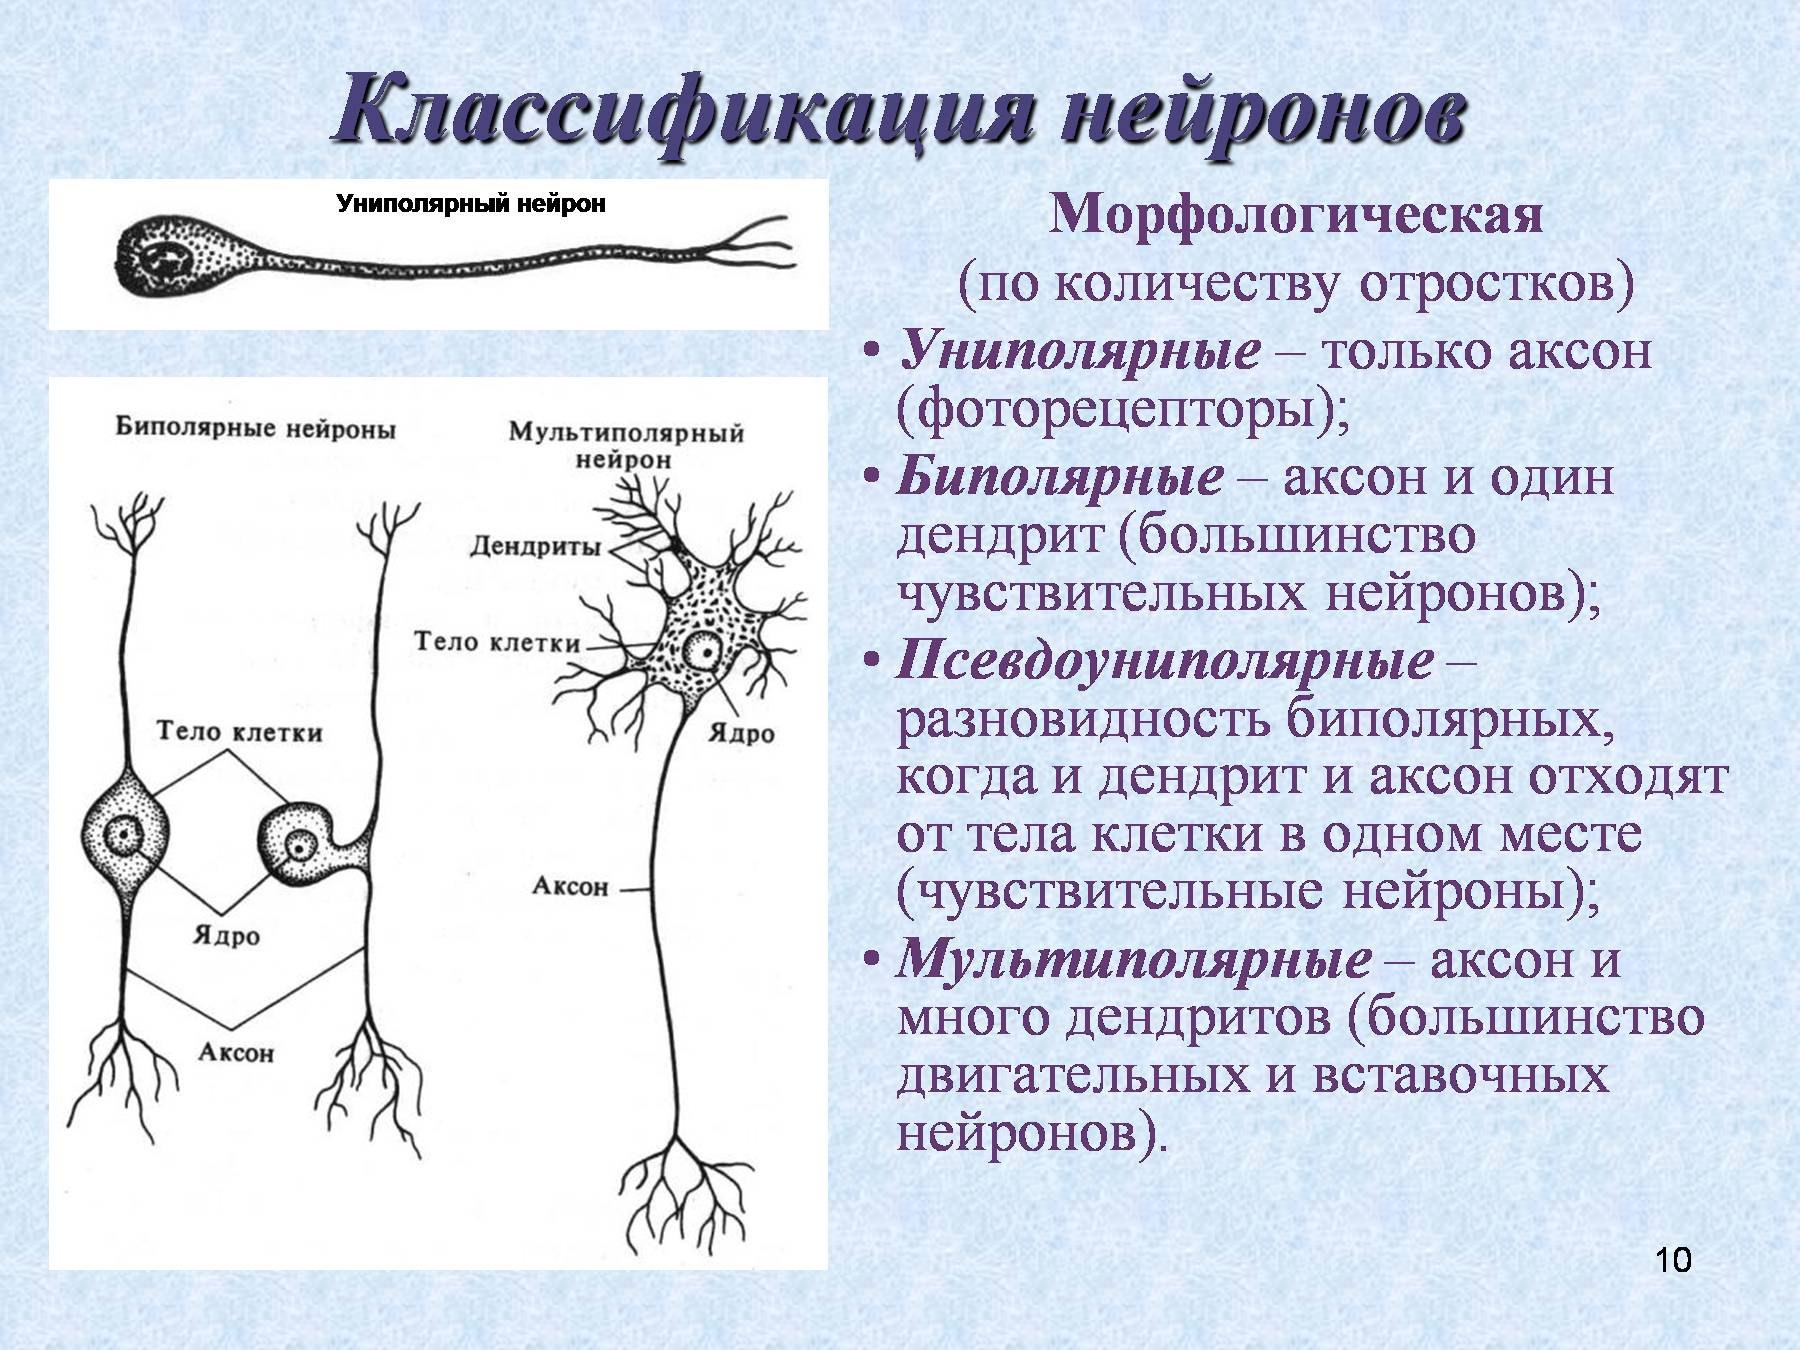 Деление нервных клеток. Псевдоуниполярные Нейроны строение. Нервная ткань классификация нейронов. Классификация нейронов биполярный униполярный. Нейрон строение и функции.